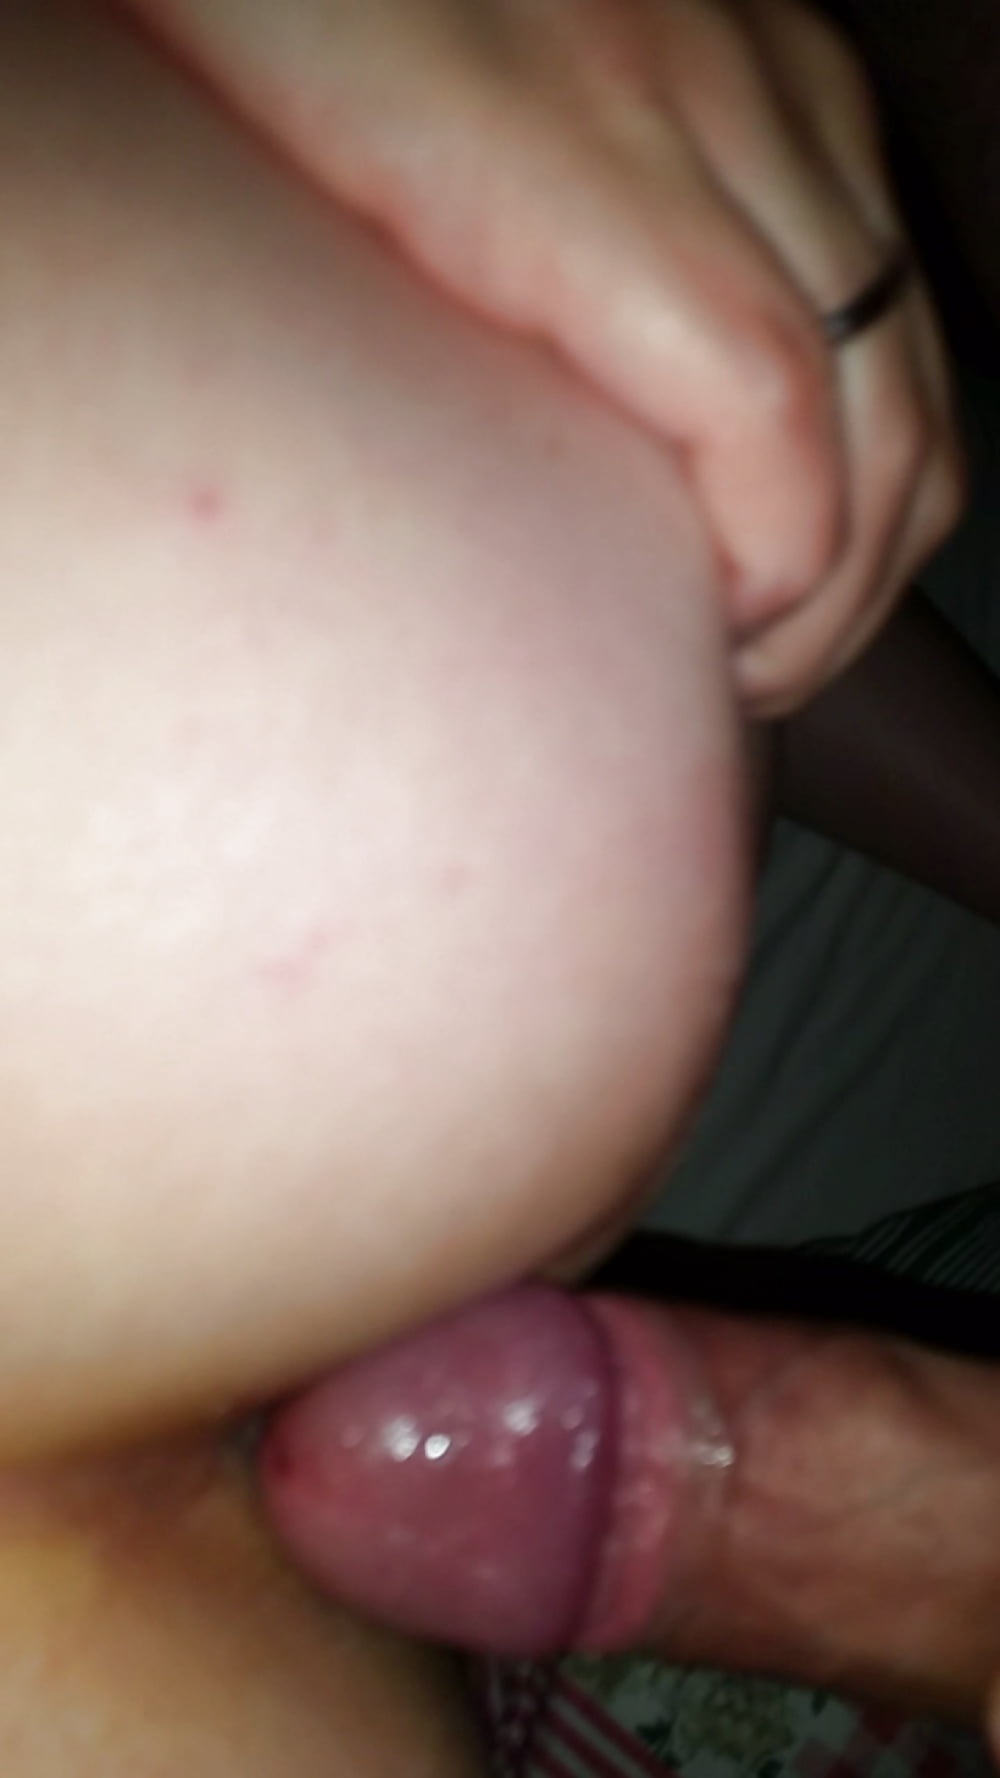 Bug_butt_girlfriend_amateur_sex_Tattoo (21/21)